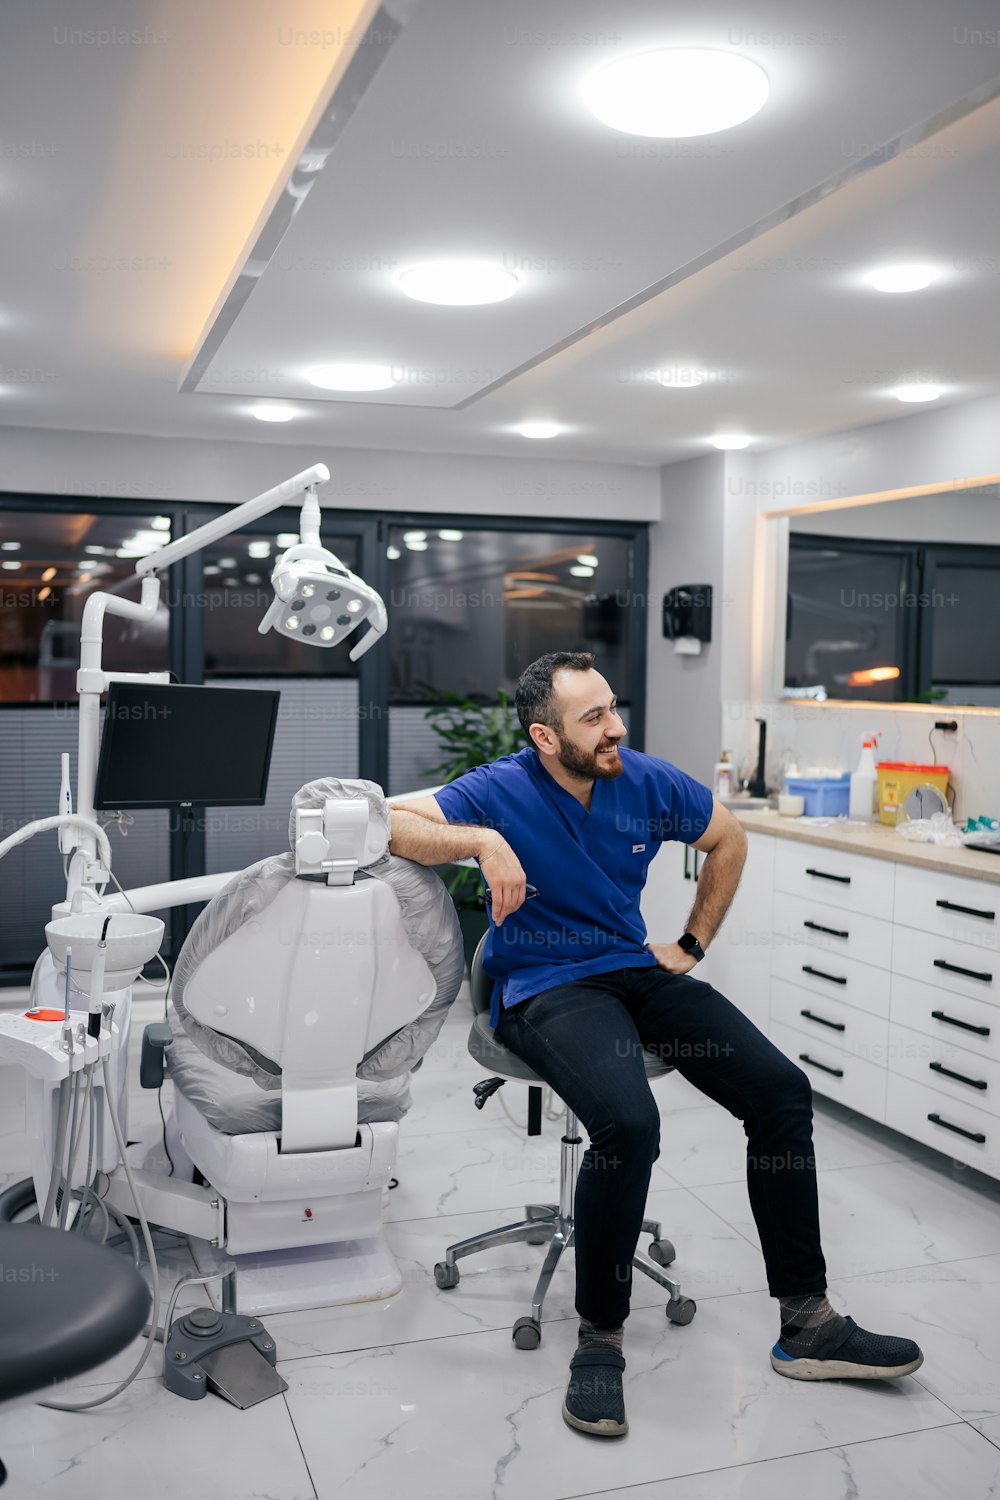 un homme assis sur une chaise dans une salle dentaire